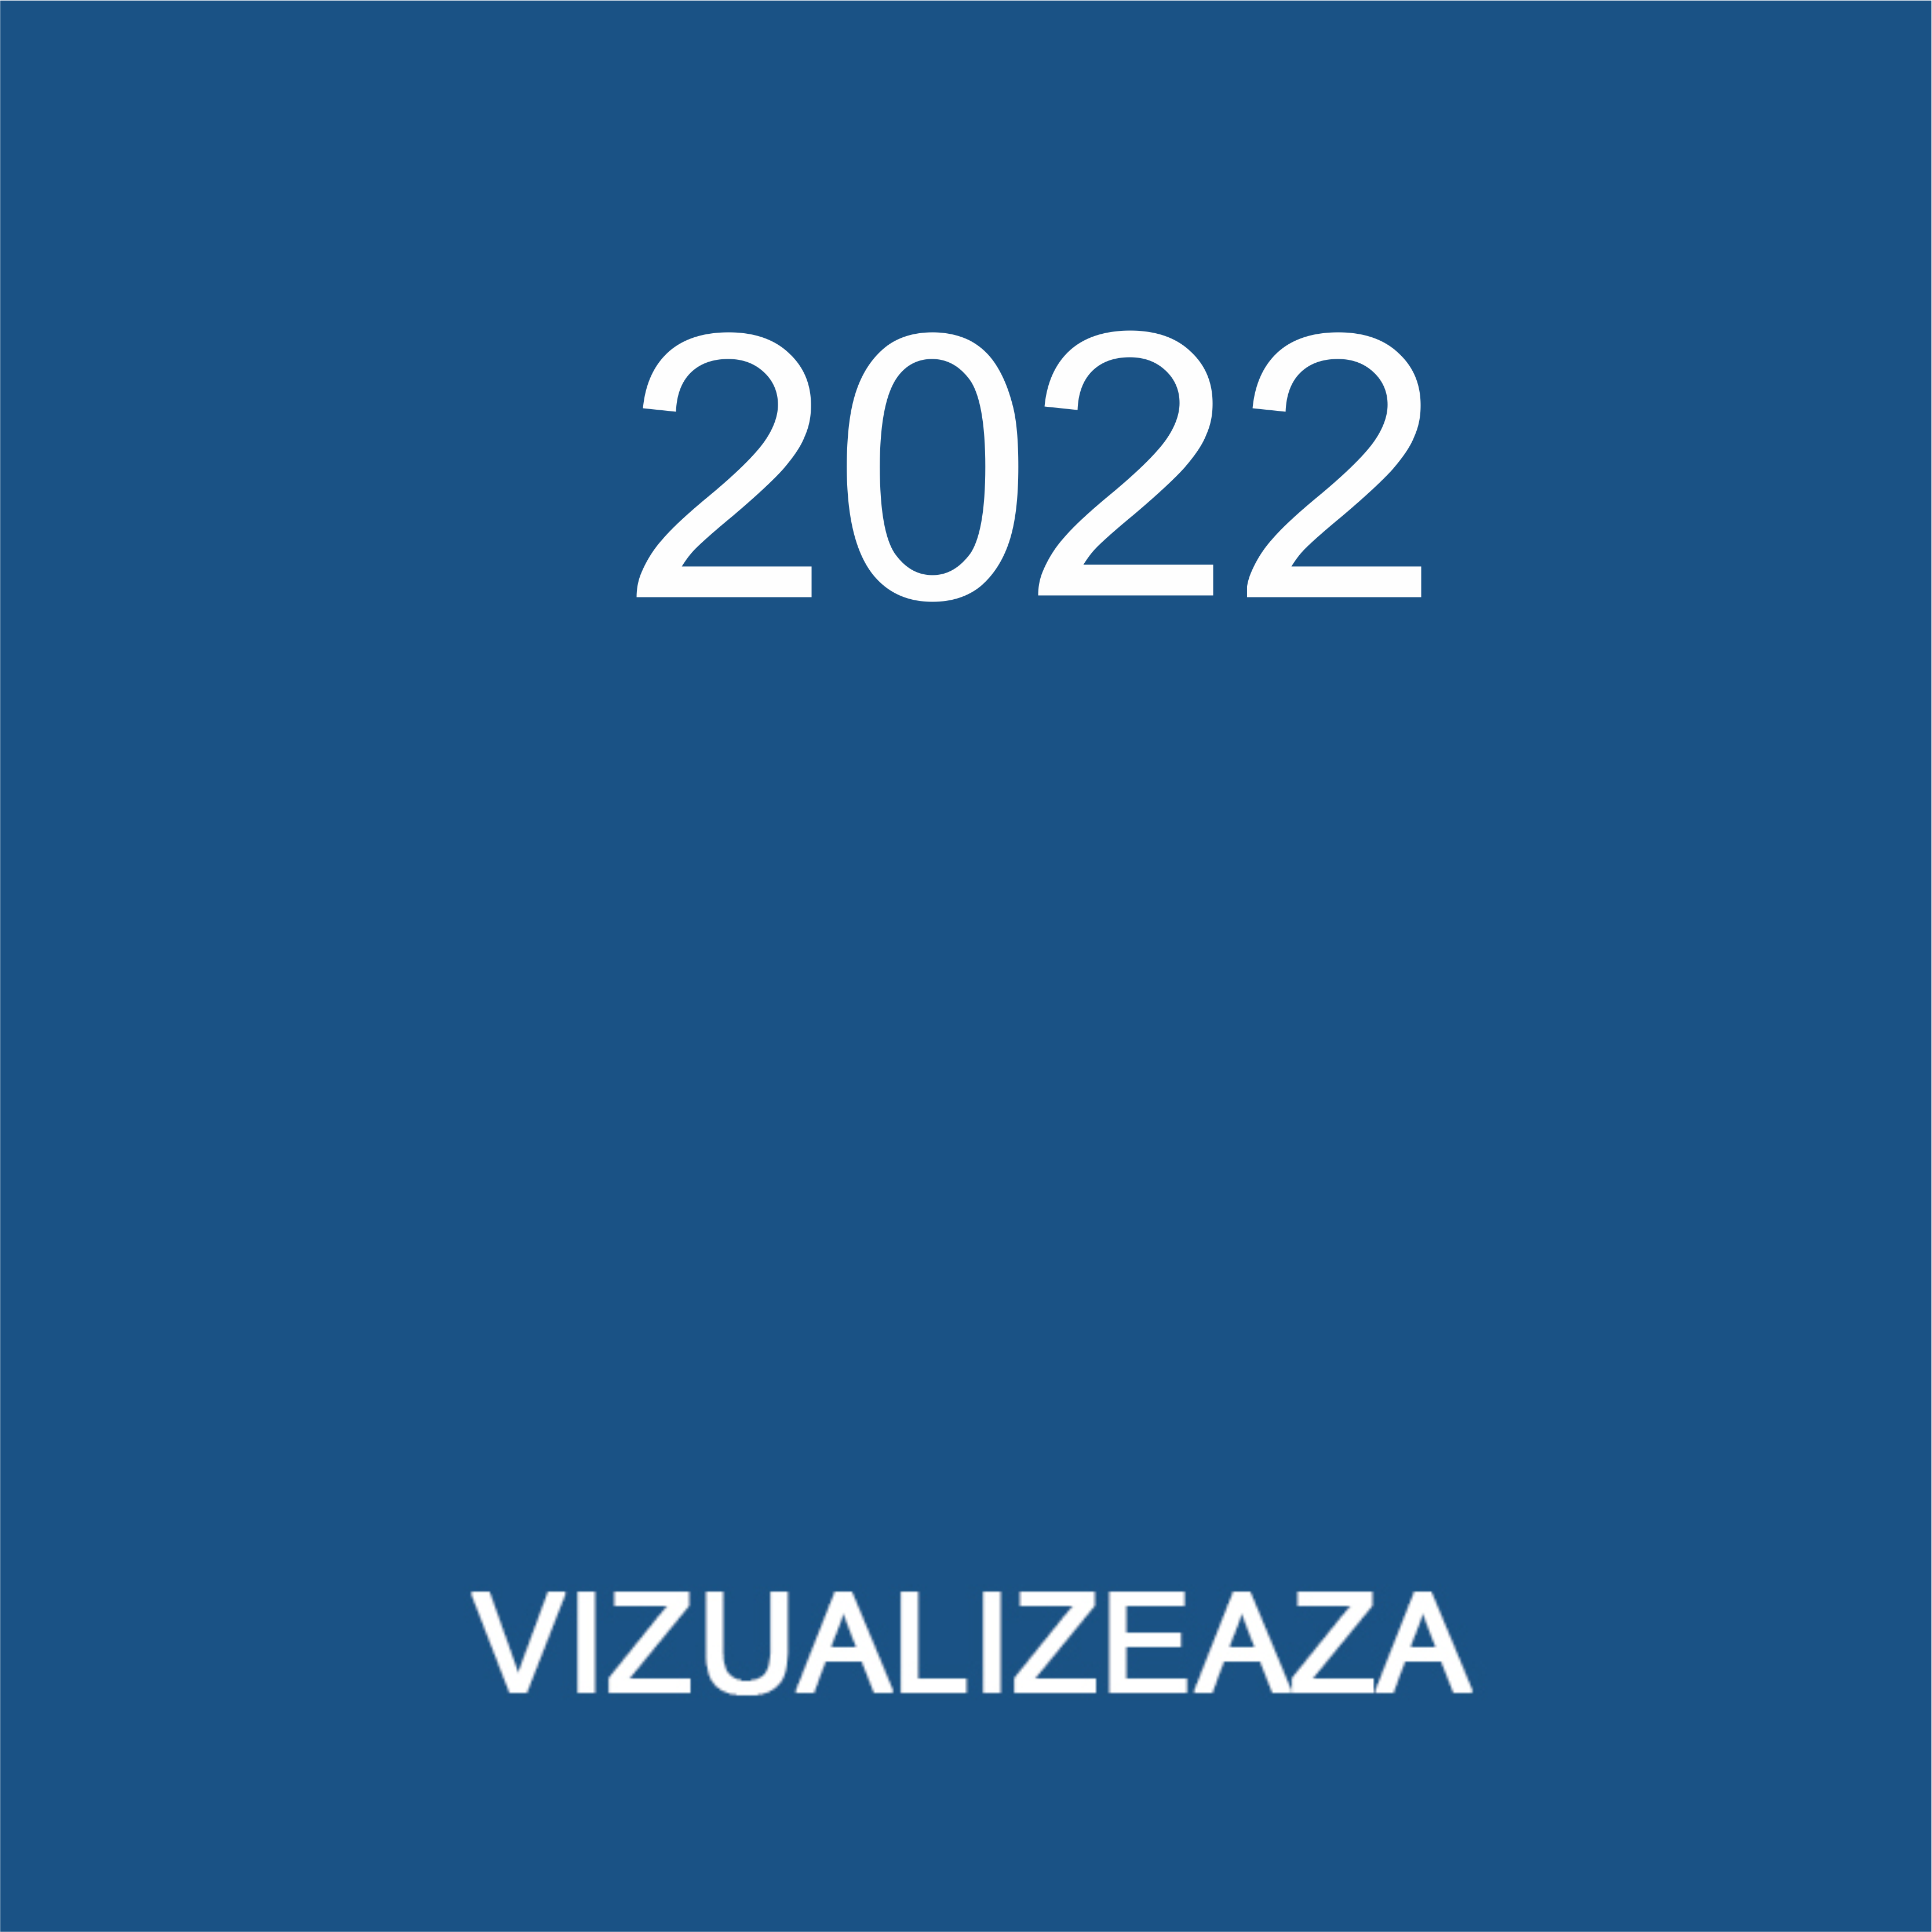 2022 raport 2